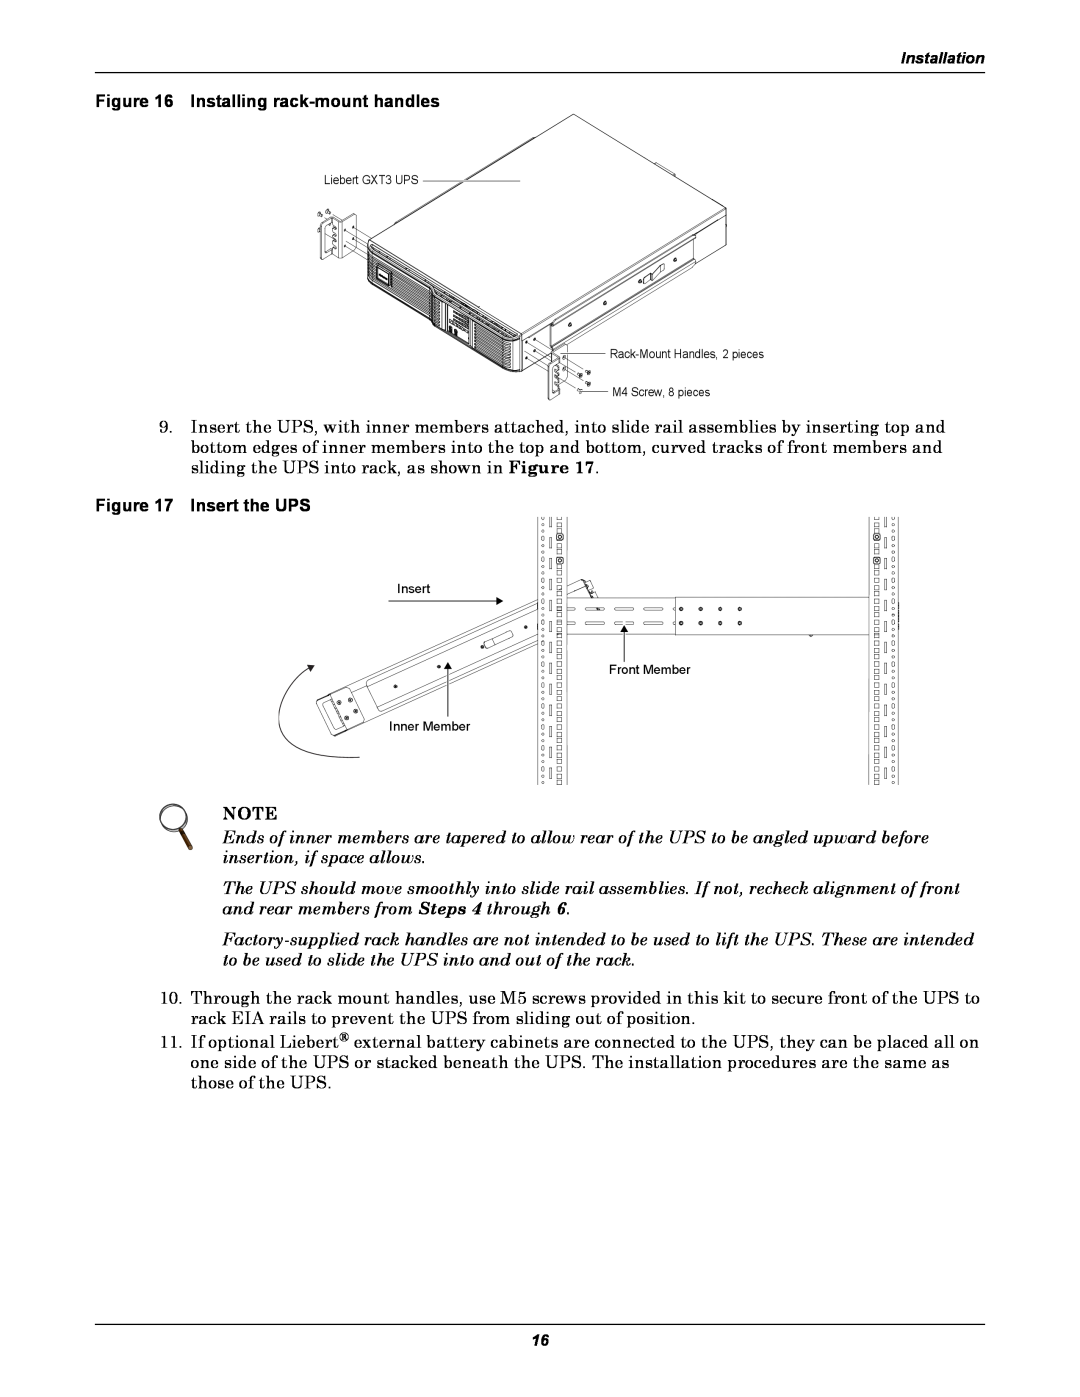 Emerson GXT3, 208V user manual Installing rack-mount handles, Insert the UPS, Insert Inner Member, Front Member 